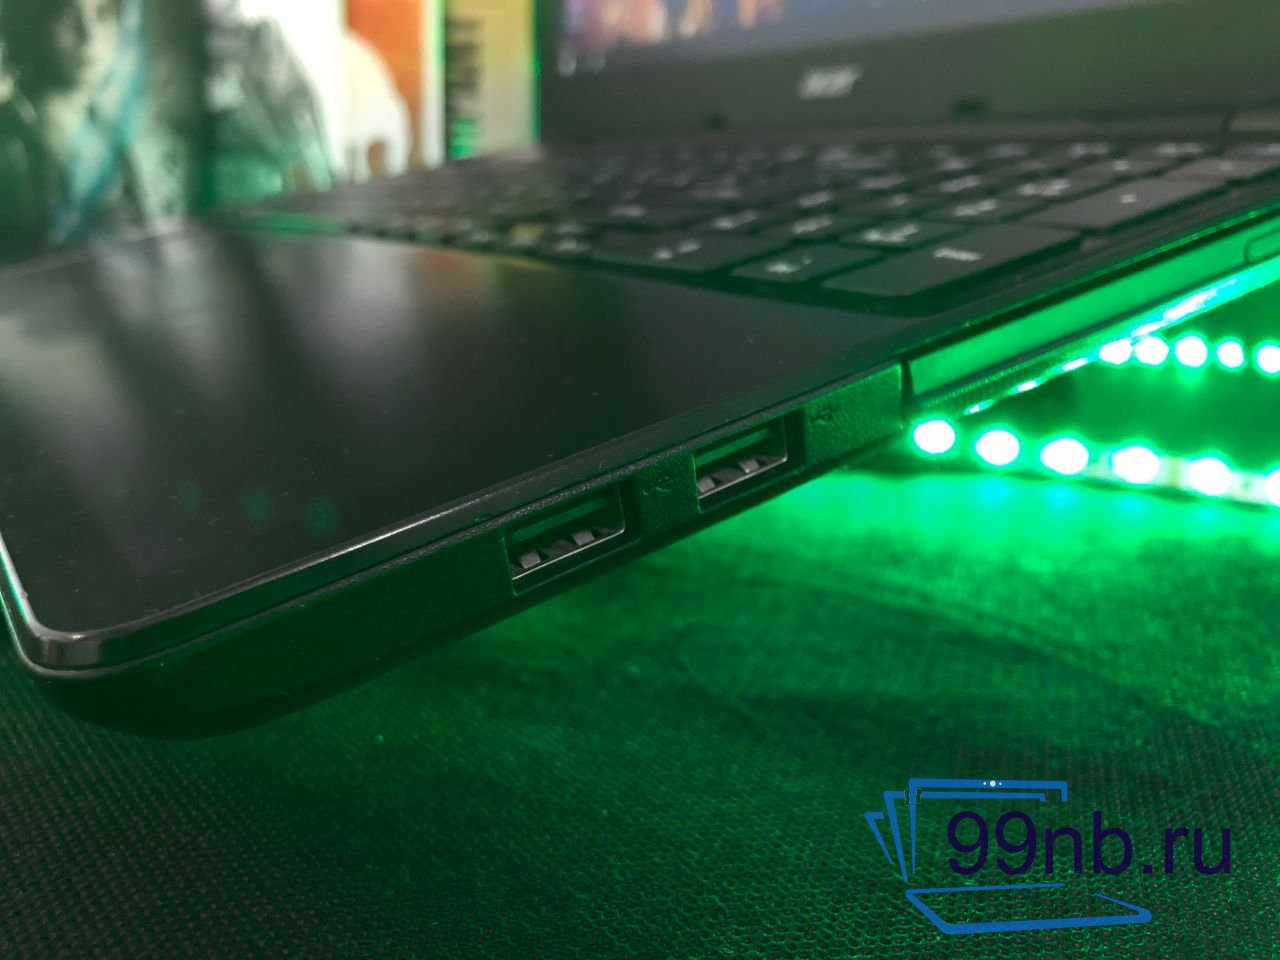  Игровой Acer с видеокартой GeForce 2GB с гарантией